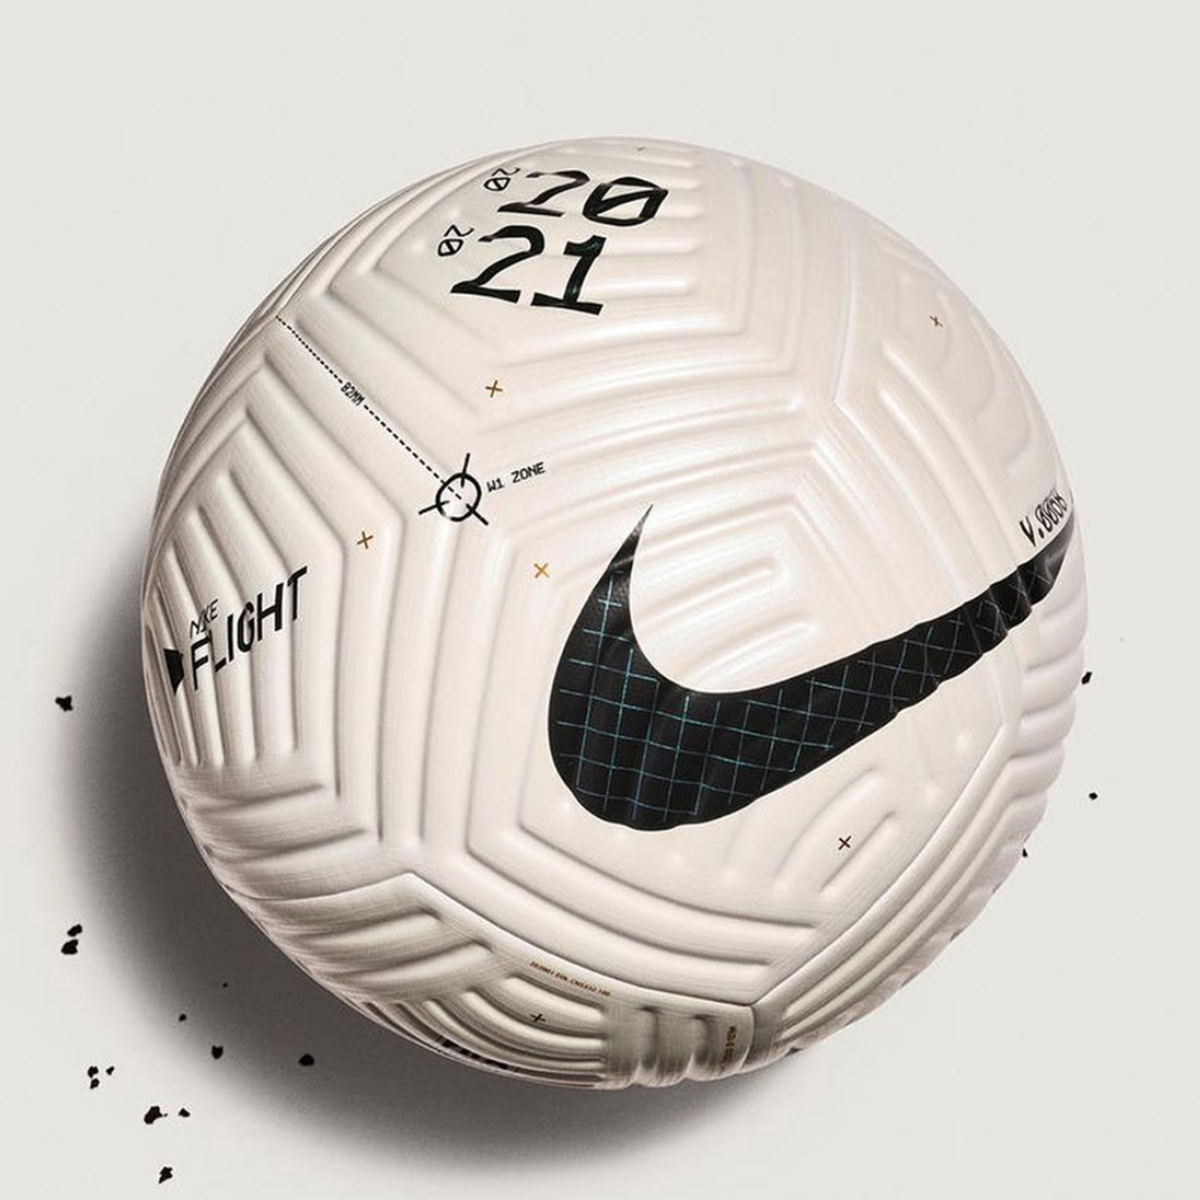 サッカーファン大注目 ナイキから新サッカーボール Nike Flight が誕生 バランスタイムズ サッカーのあるファッションライフ